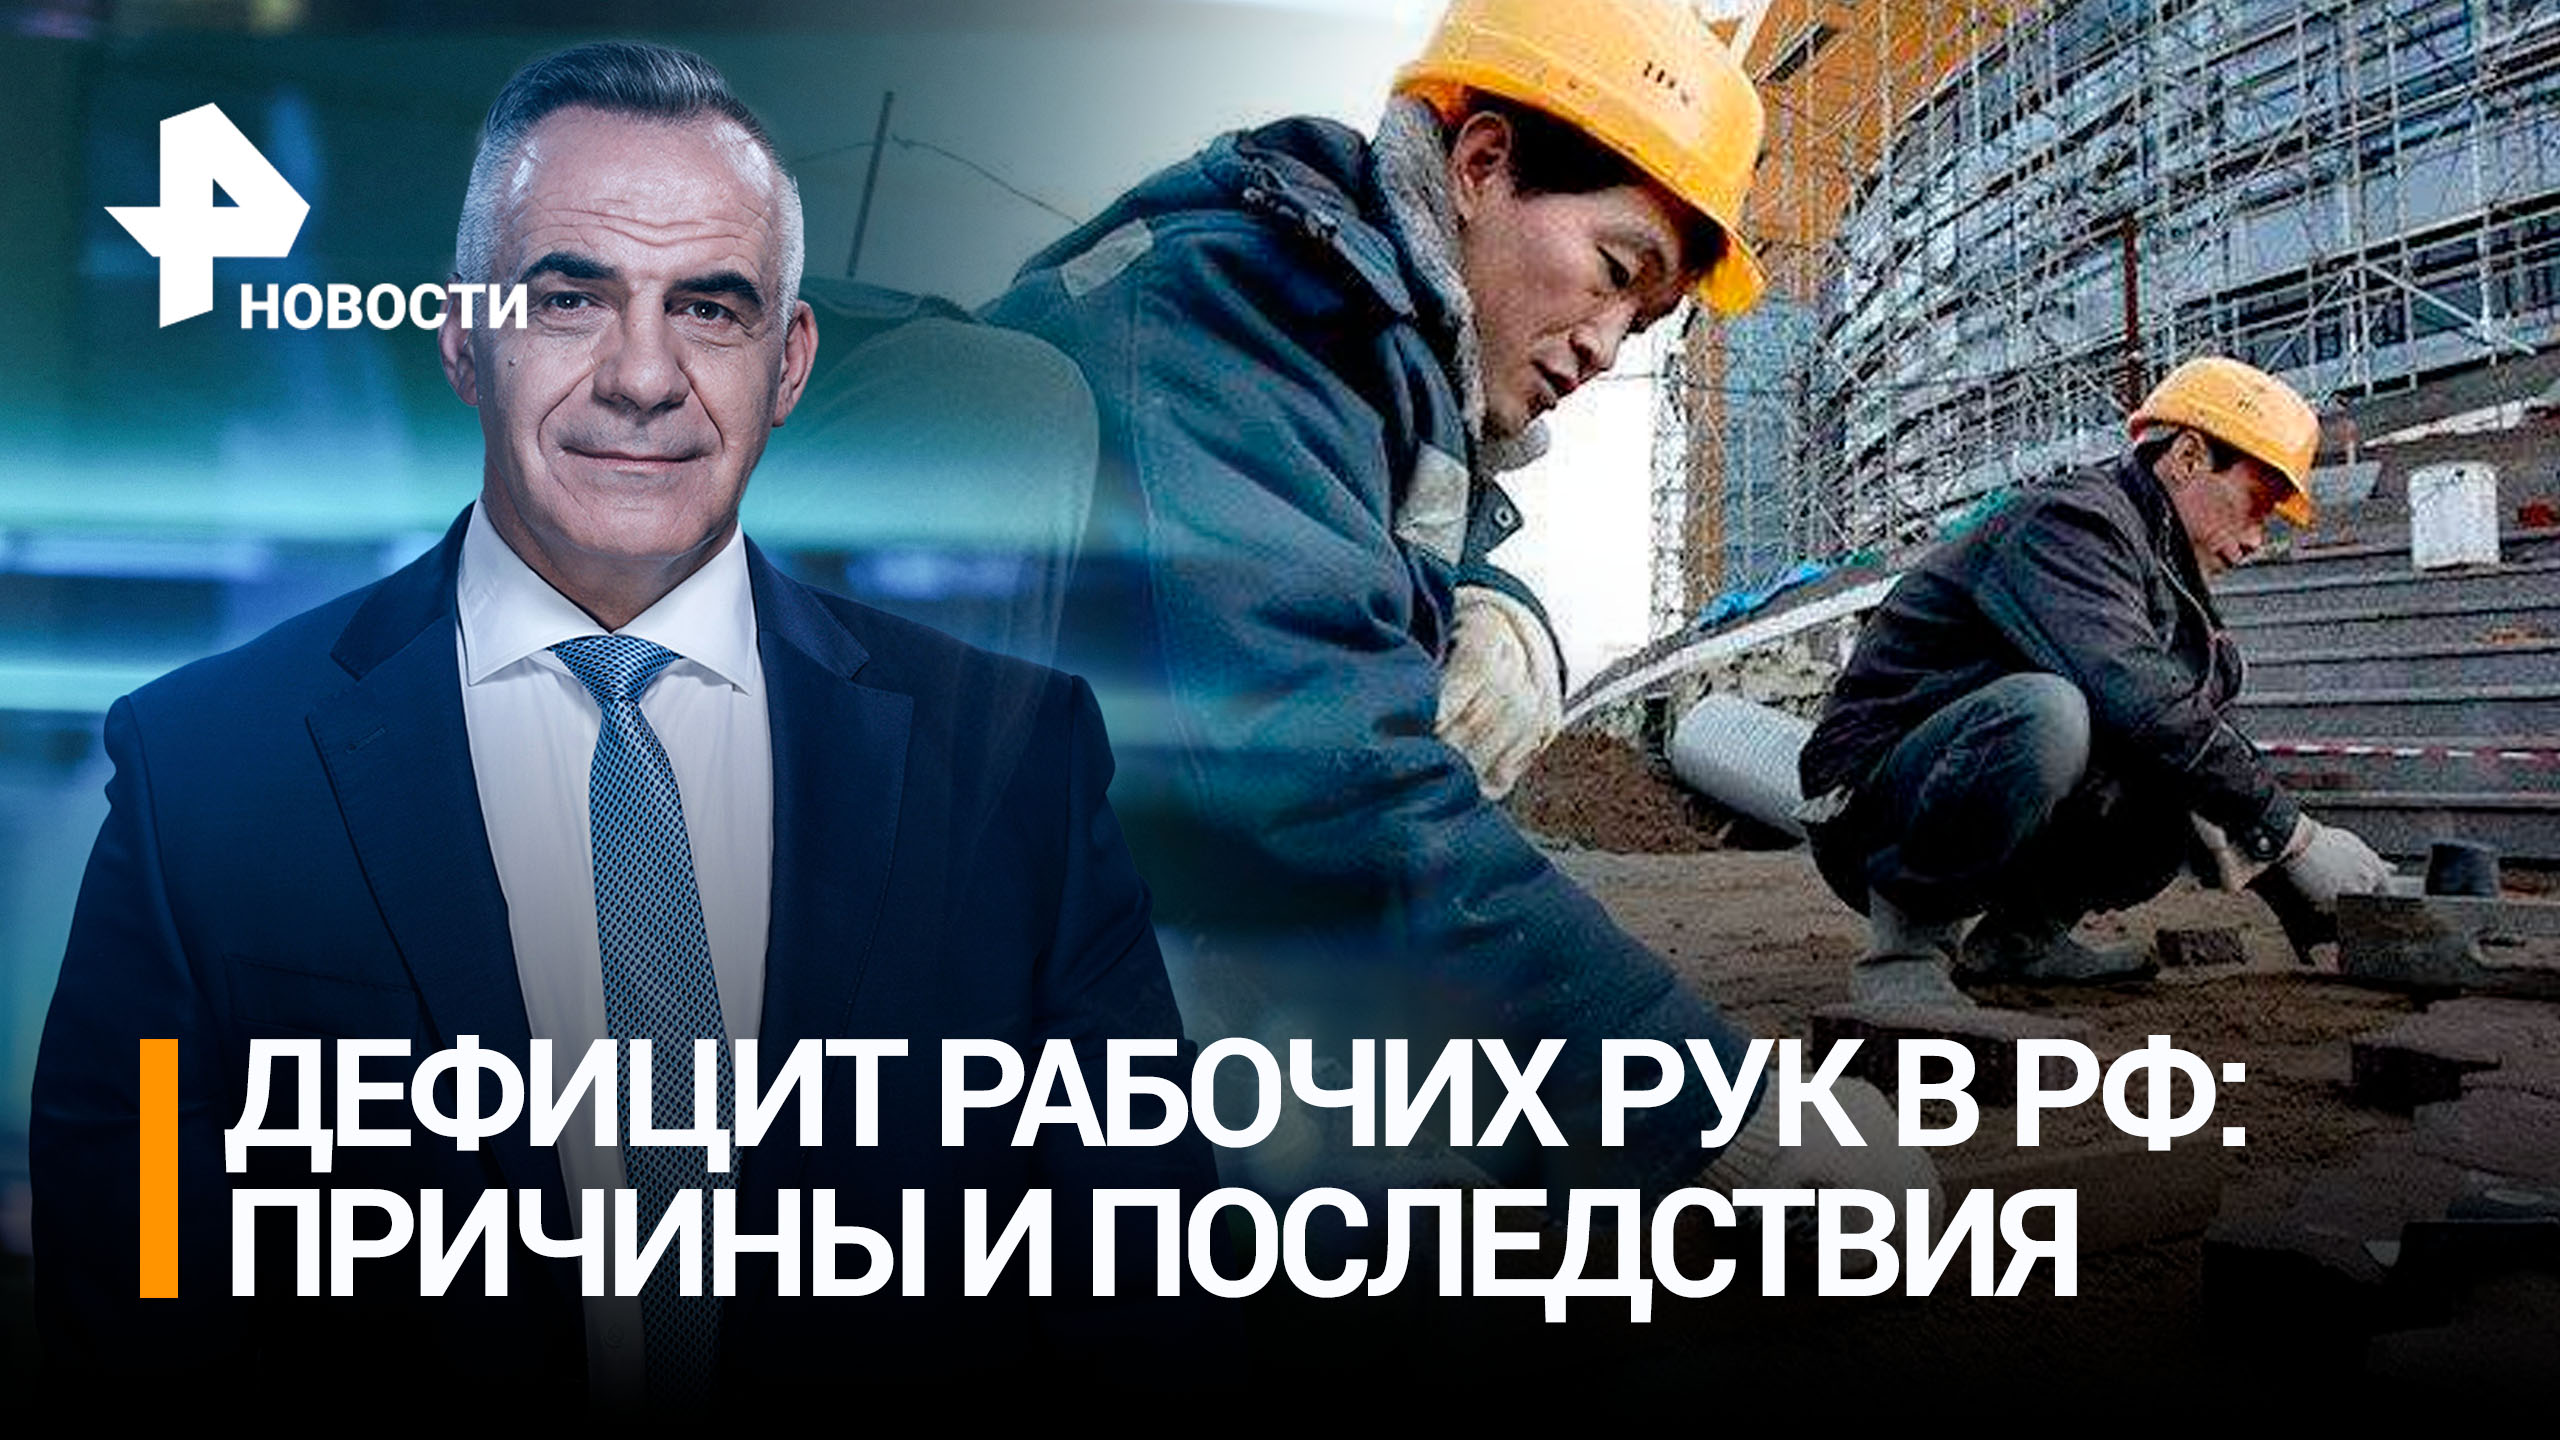 Россия столкнулась с дефицитом рабочих в условиях роста экономики / ИТОГИ с Петром Марченко